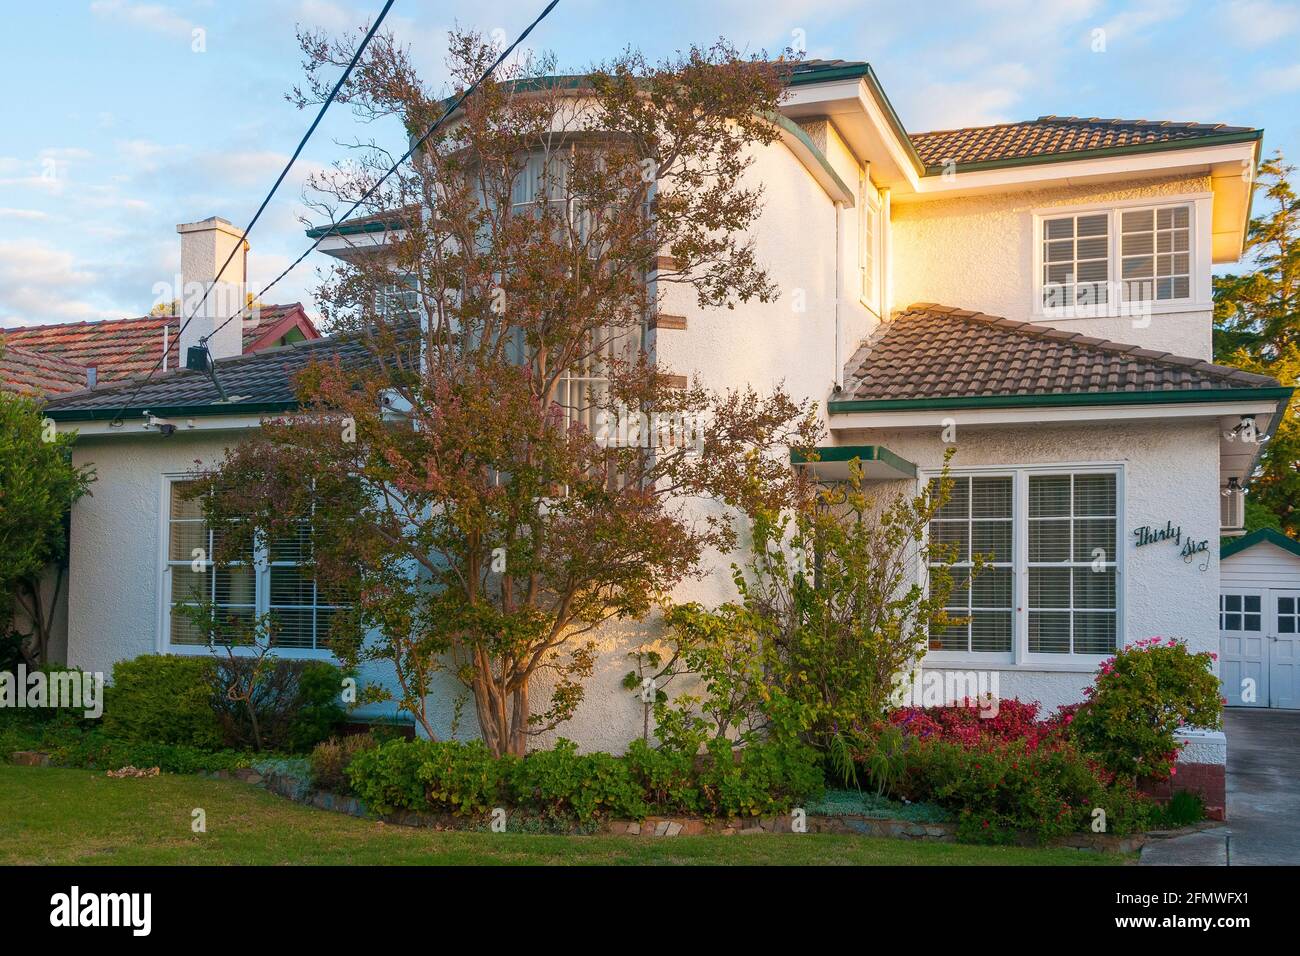 Rationalisieren Sie das moderne oder im Stil eines Ozeanliners gehaltene Haus der Zwischenkriegsfamilie in Melbourne, Australien Stockfoto